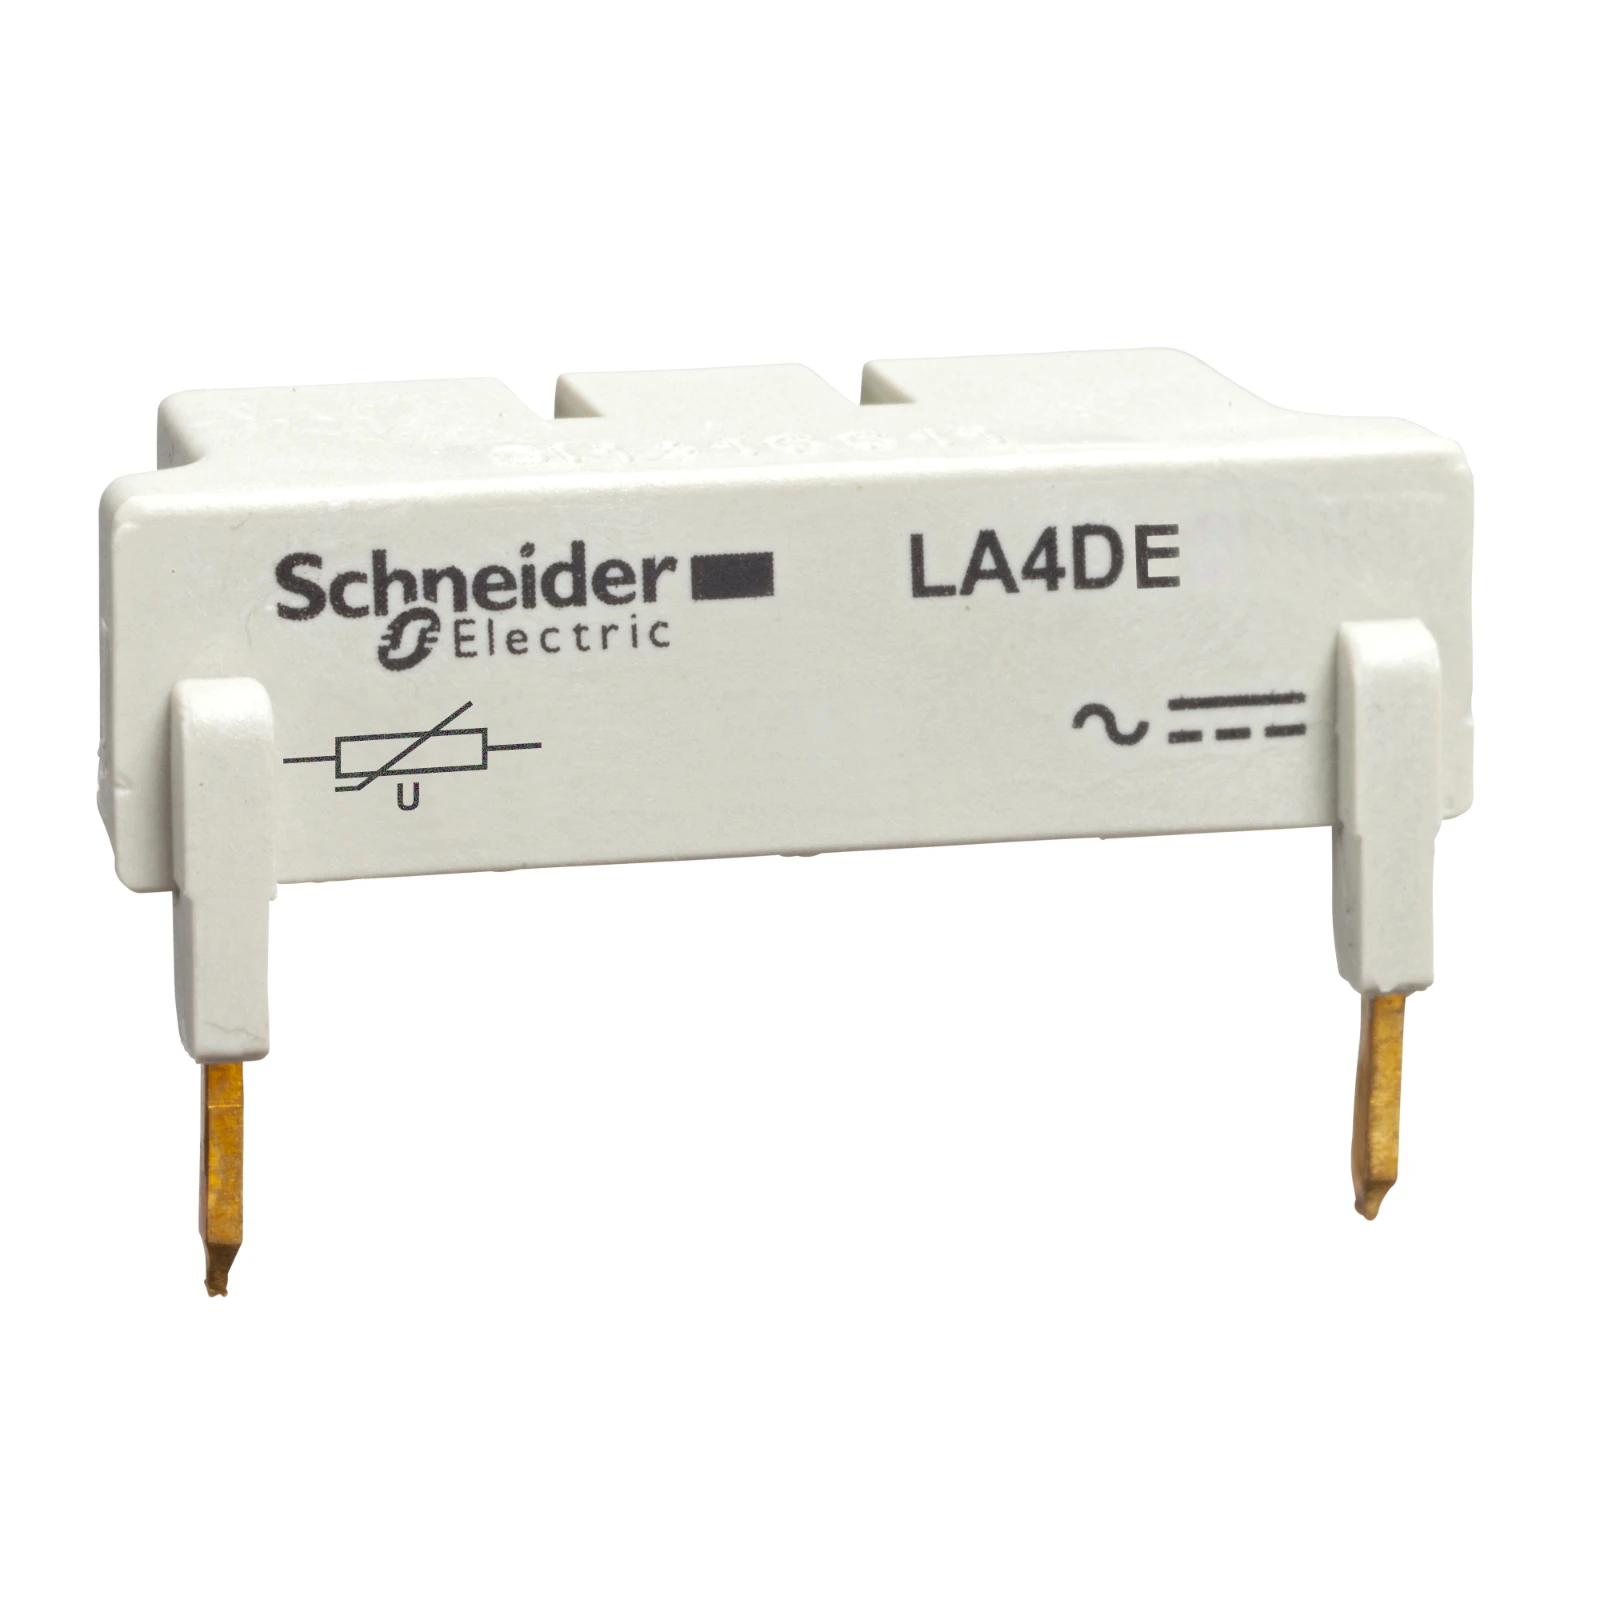 1041847 - Schneider Electric LA4DE2U